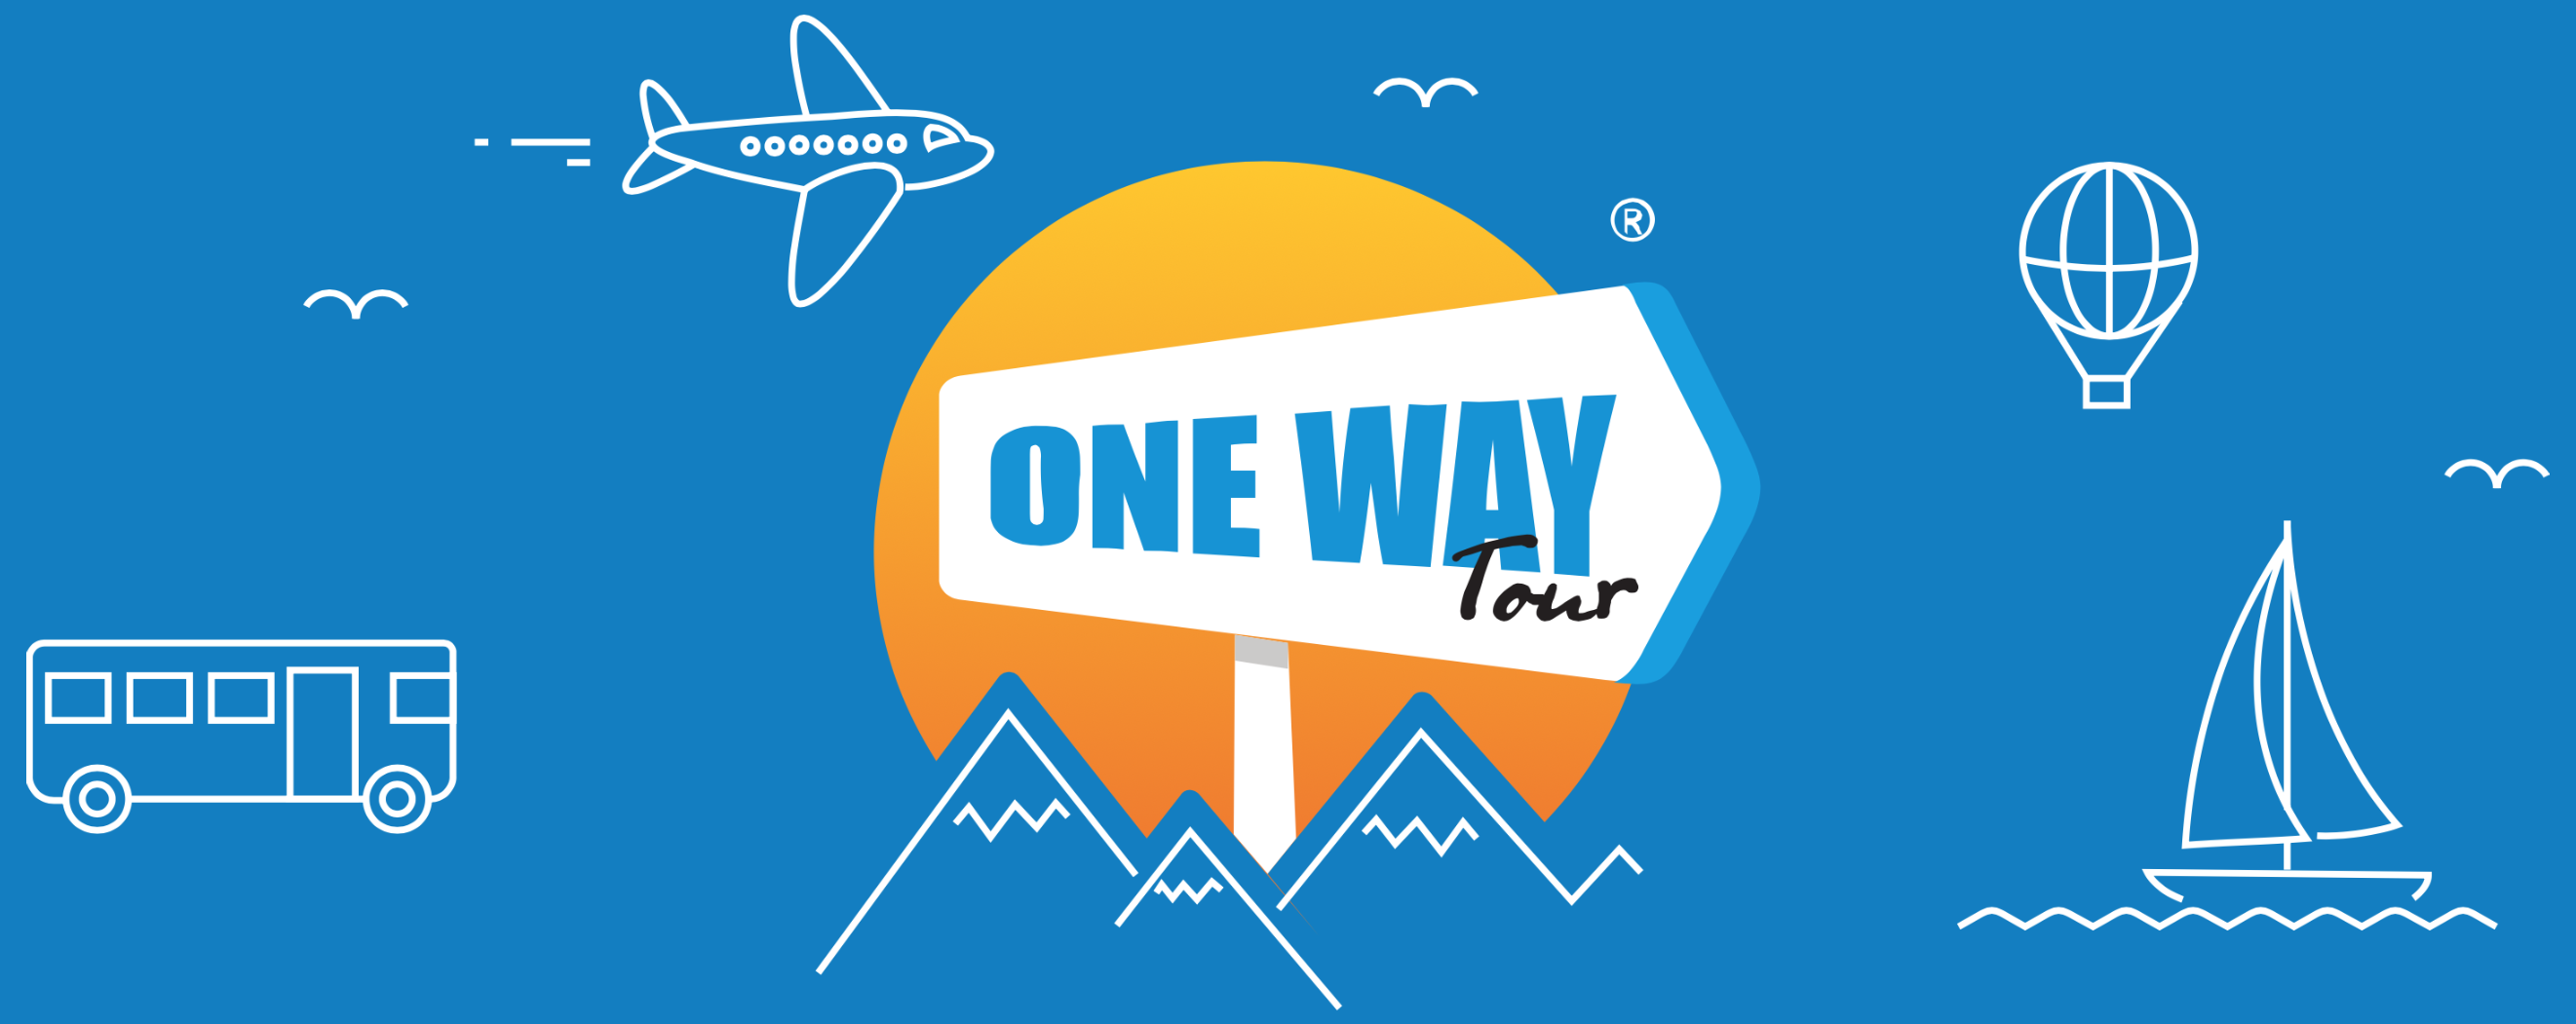 oneway tour